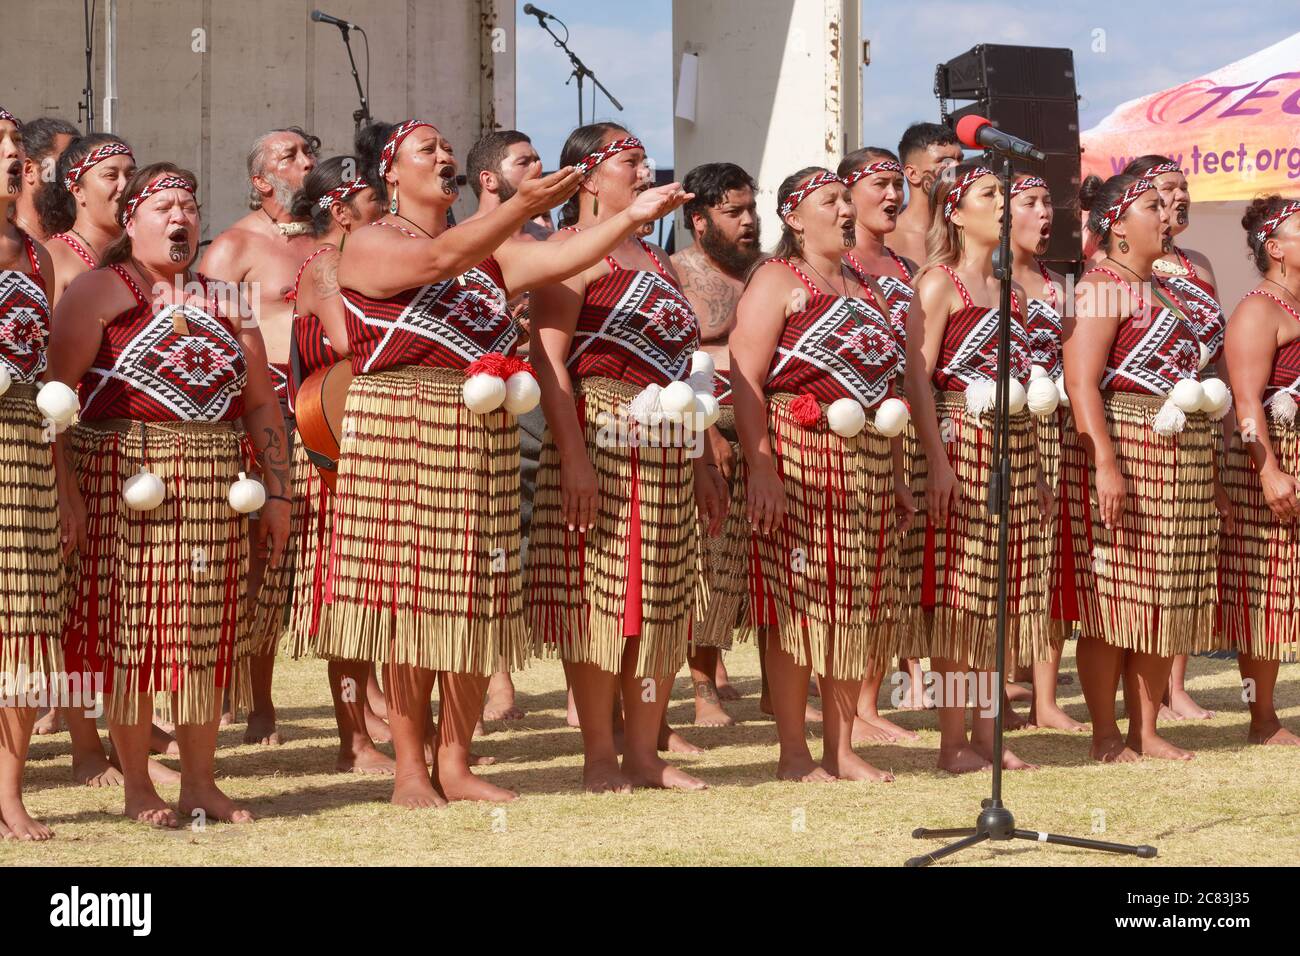 Femmes maories de Nouvelle-Zélande d'un groupe de kapa haka (danse maorie) se présentant en robe traditionnelle. Mount Maunganui, Nouvelle-Zélande, 6 février 2019 Banque D'Images